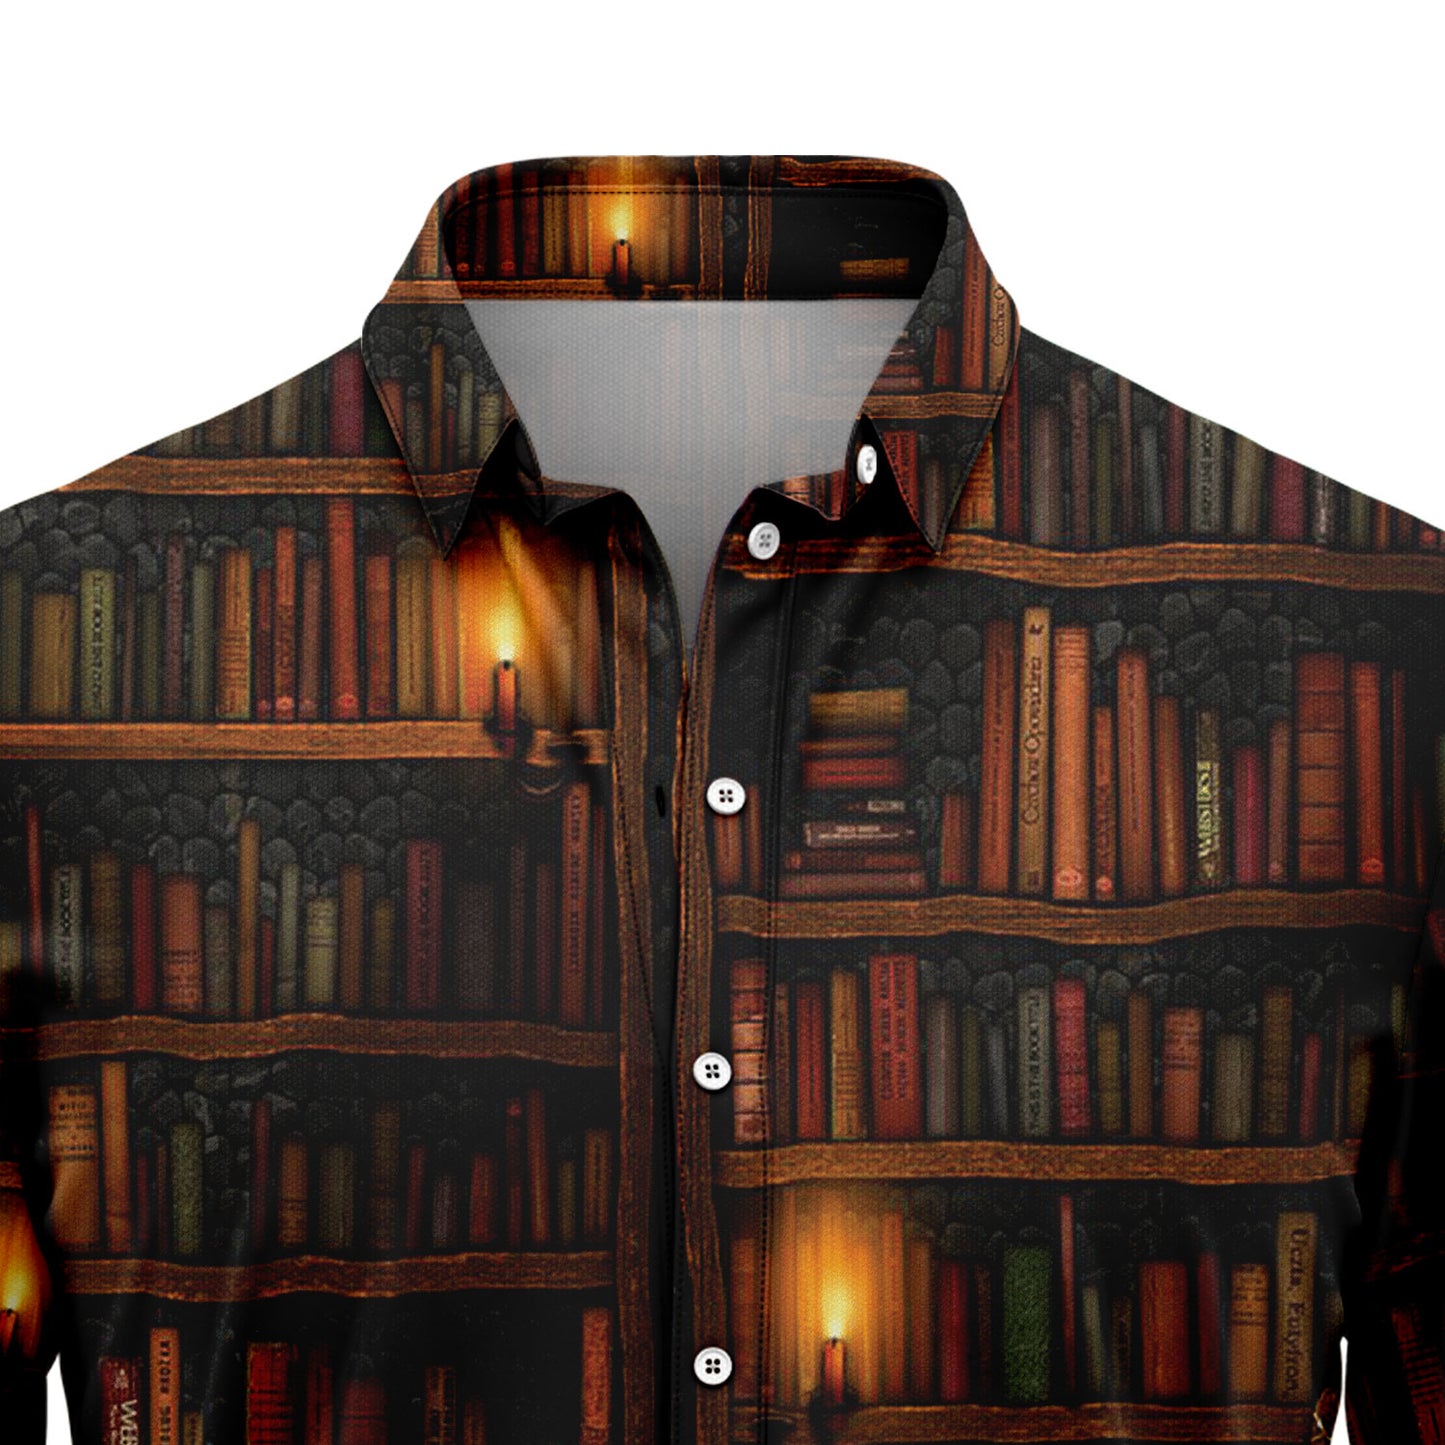 Amazing Bookshelf G5728 Hawaiian Shirt